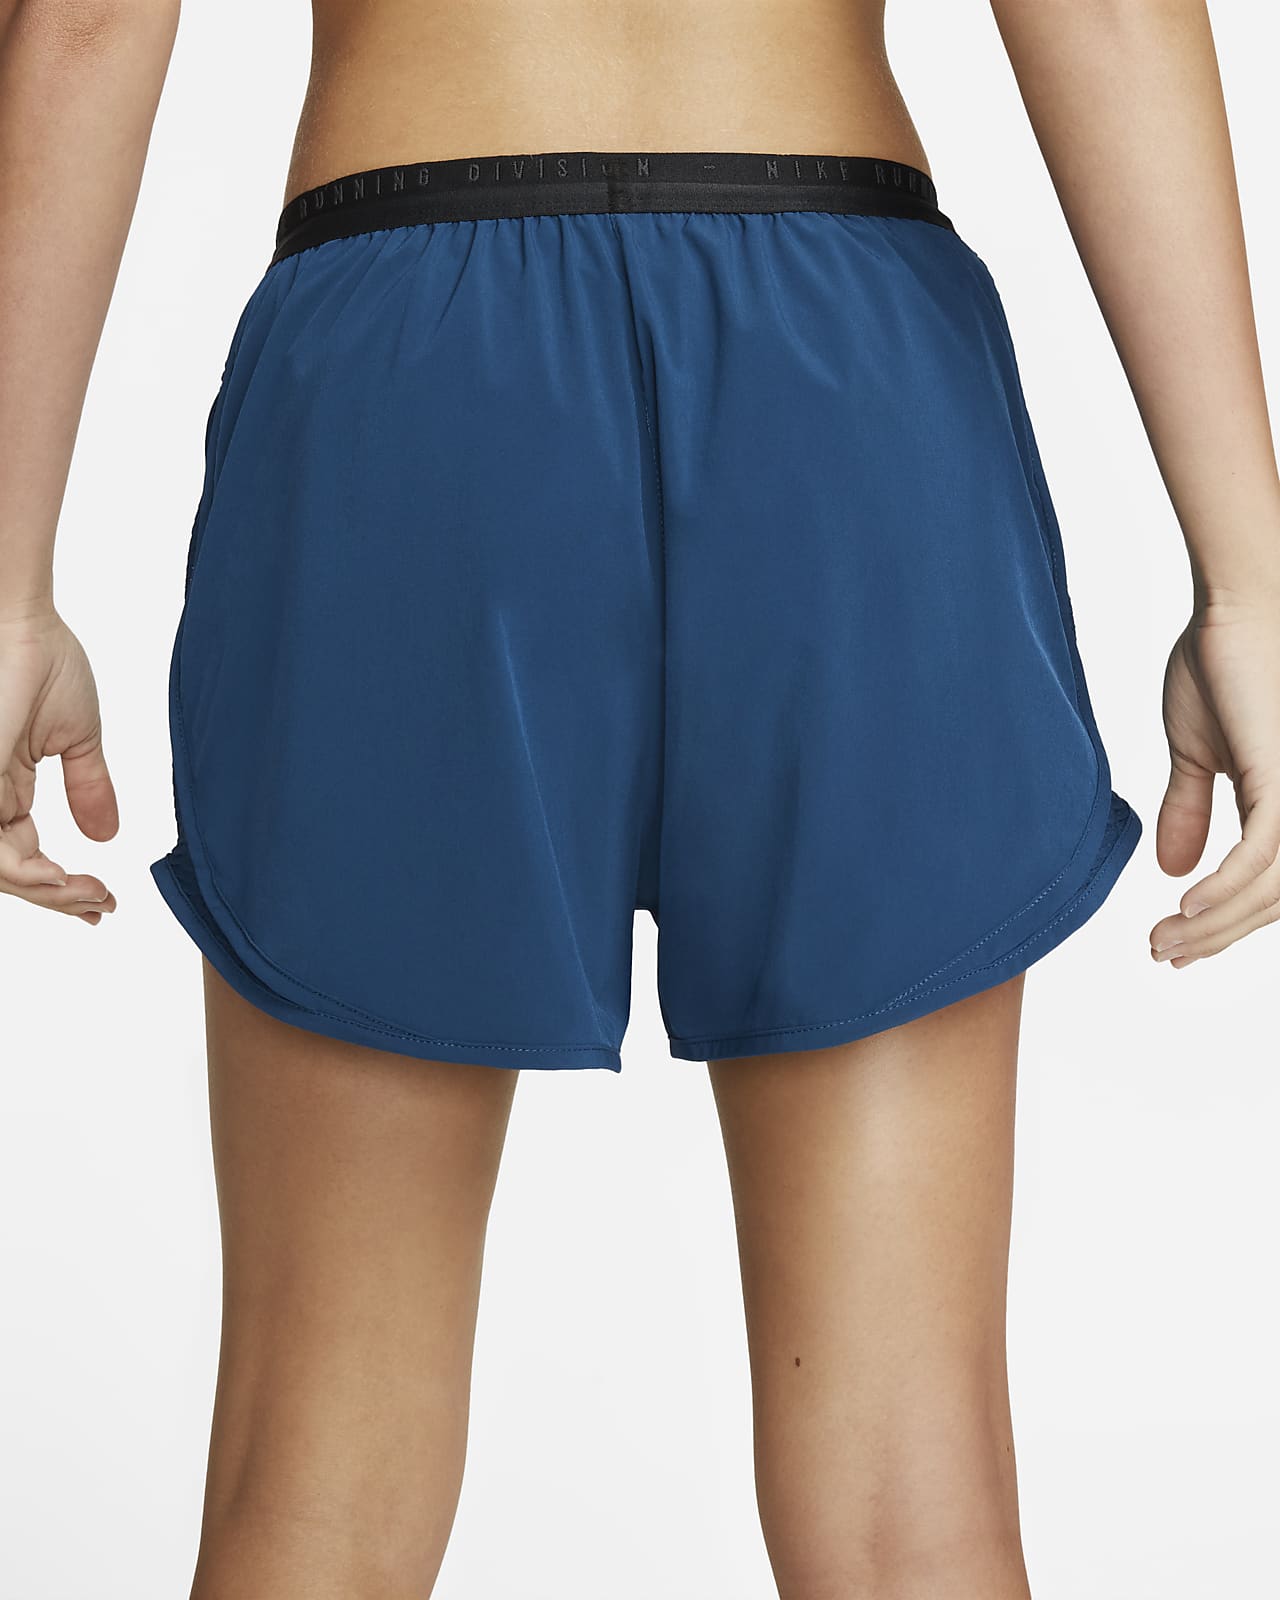 Nike Tempo Women's Americana Print Running Shorts.